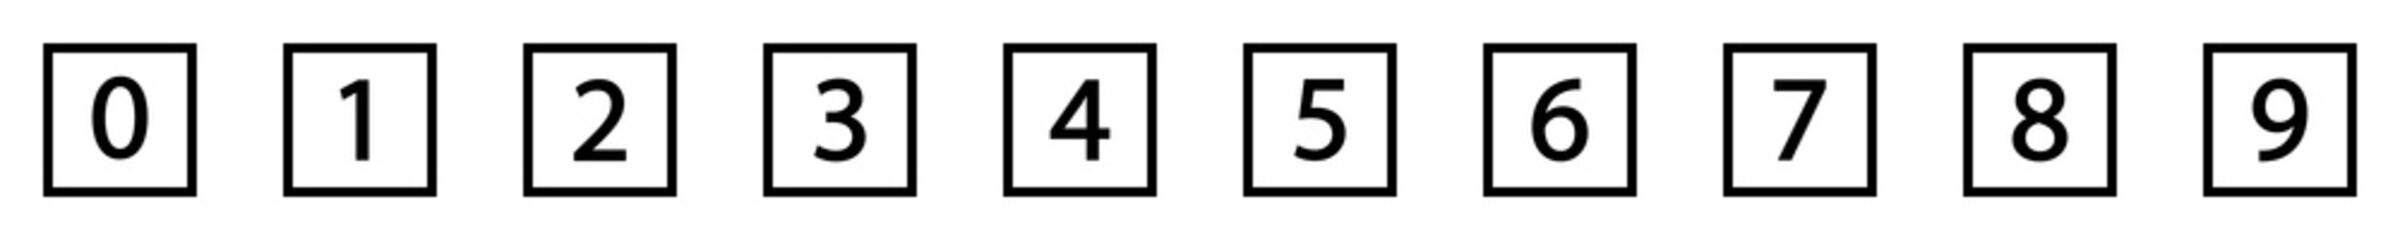 números del 1 al 9, estilo línea